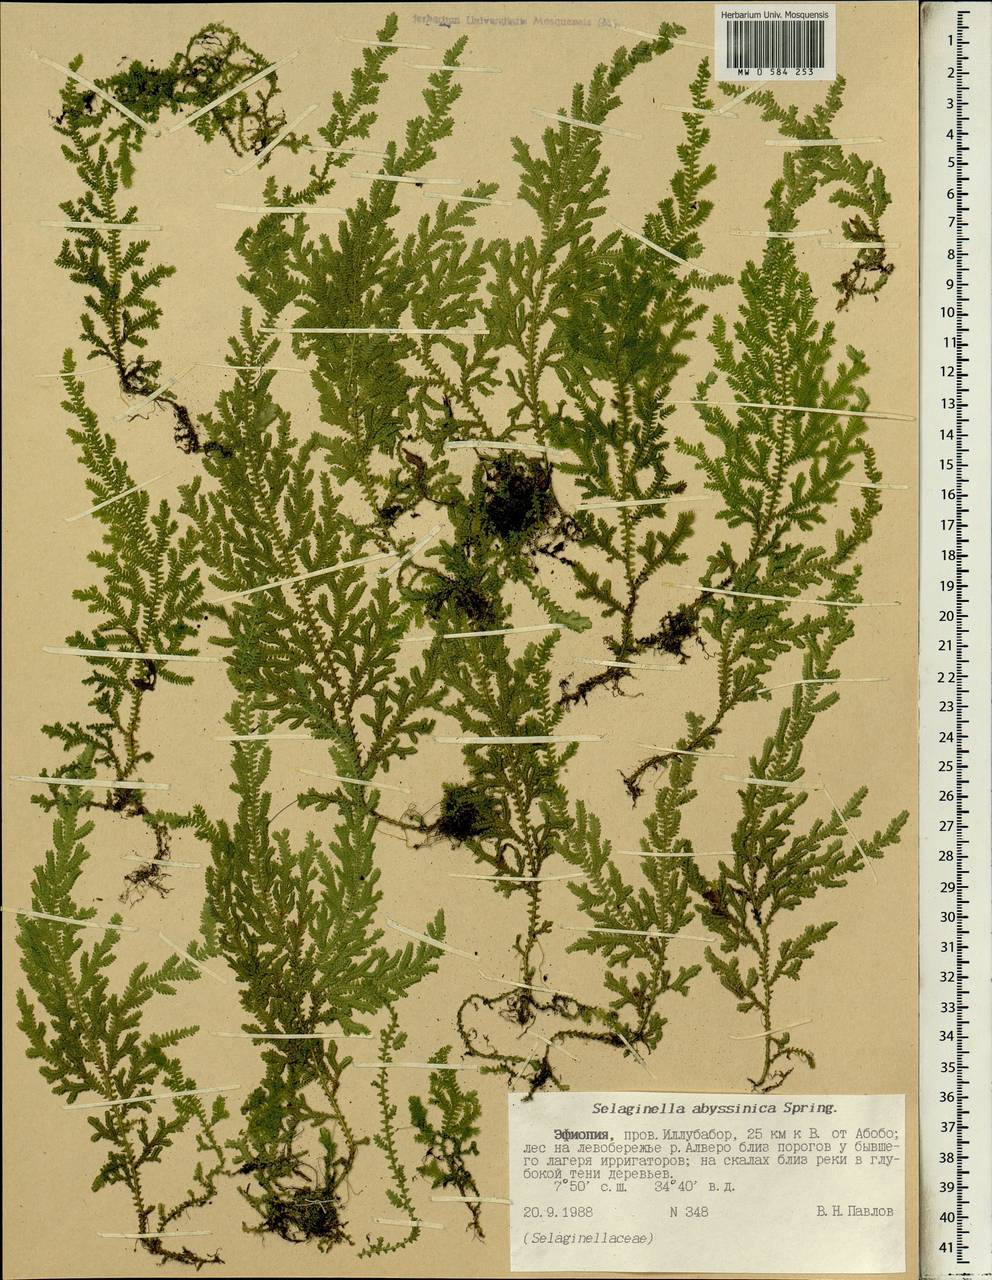 Selaginella goudotiana var. abyssinica (Spring) Bizzarri, Africa (AFR) (Ethiopia)